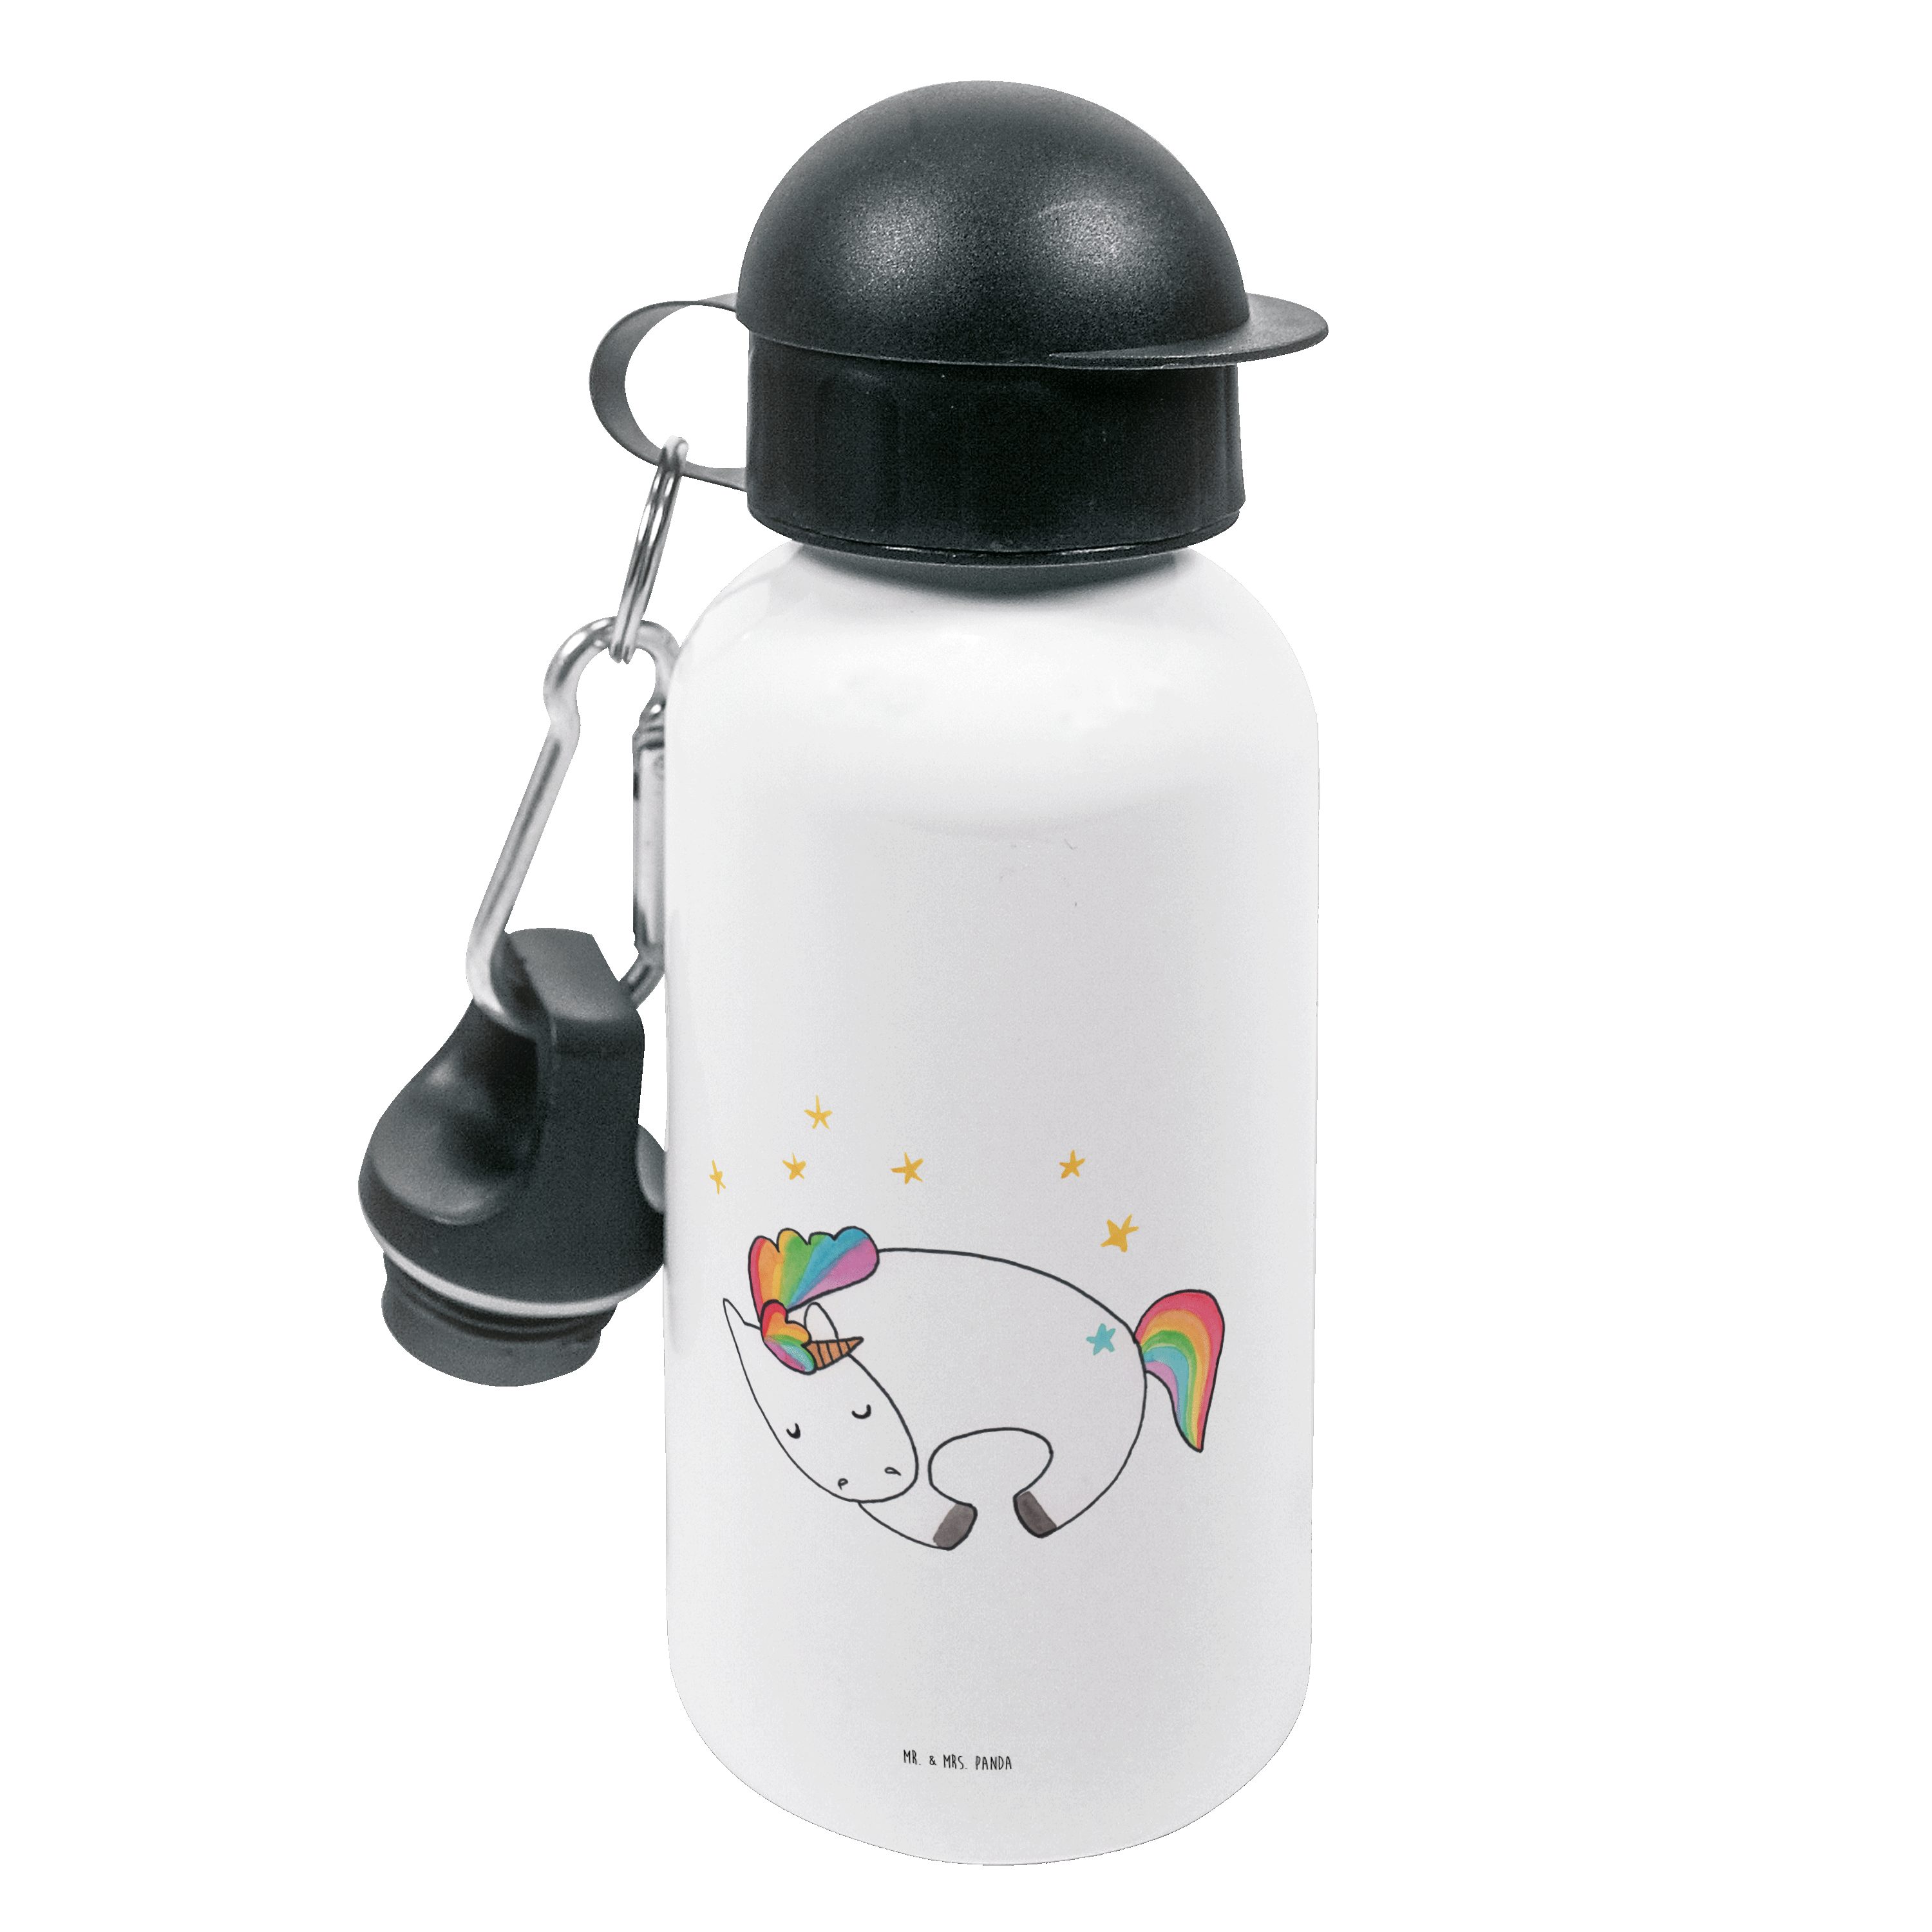 Mr. & Mrs. Panda Trinkflasche Einhorn Nacht - Weiß - Geschenk, Kindertrinkflasche, Einhorn Deko, Pe